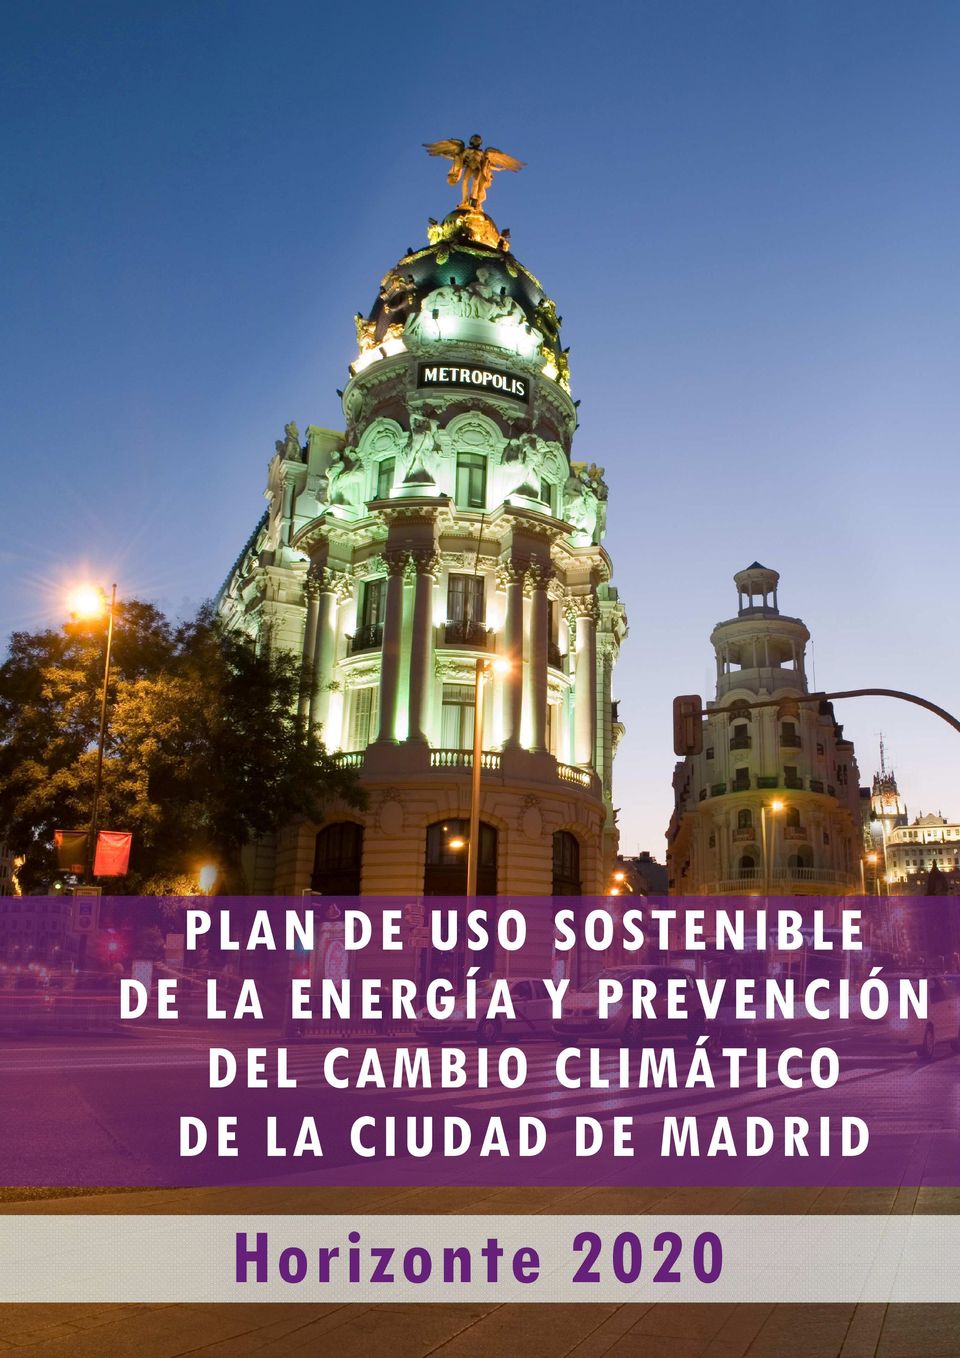 CLIMÁTICO DE LA CIUDAD DE MADRID Horizonte 2020 2020